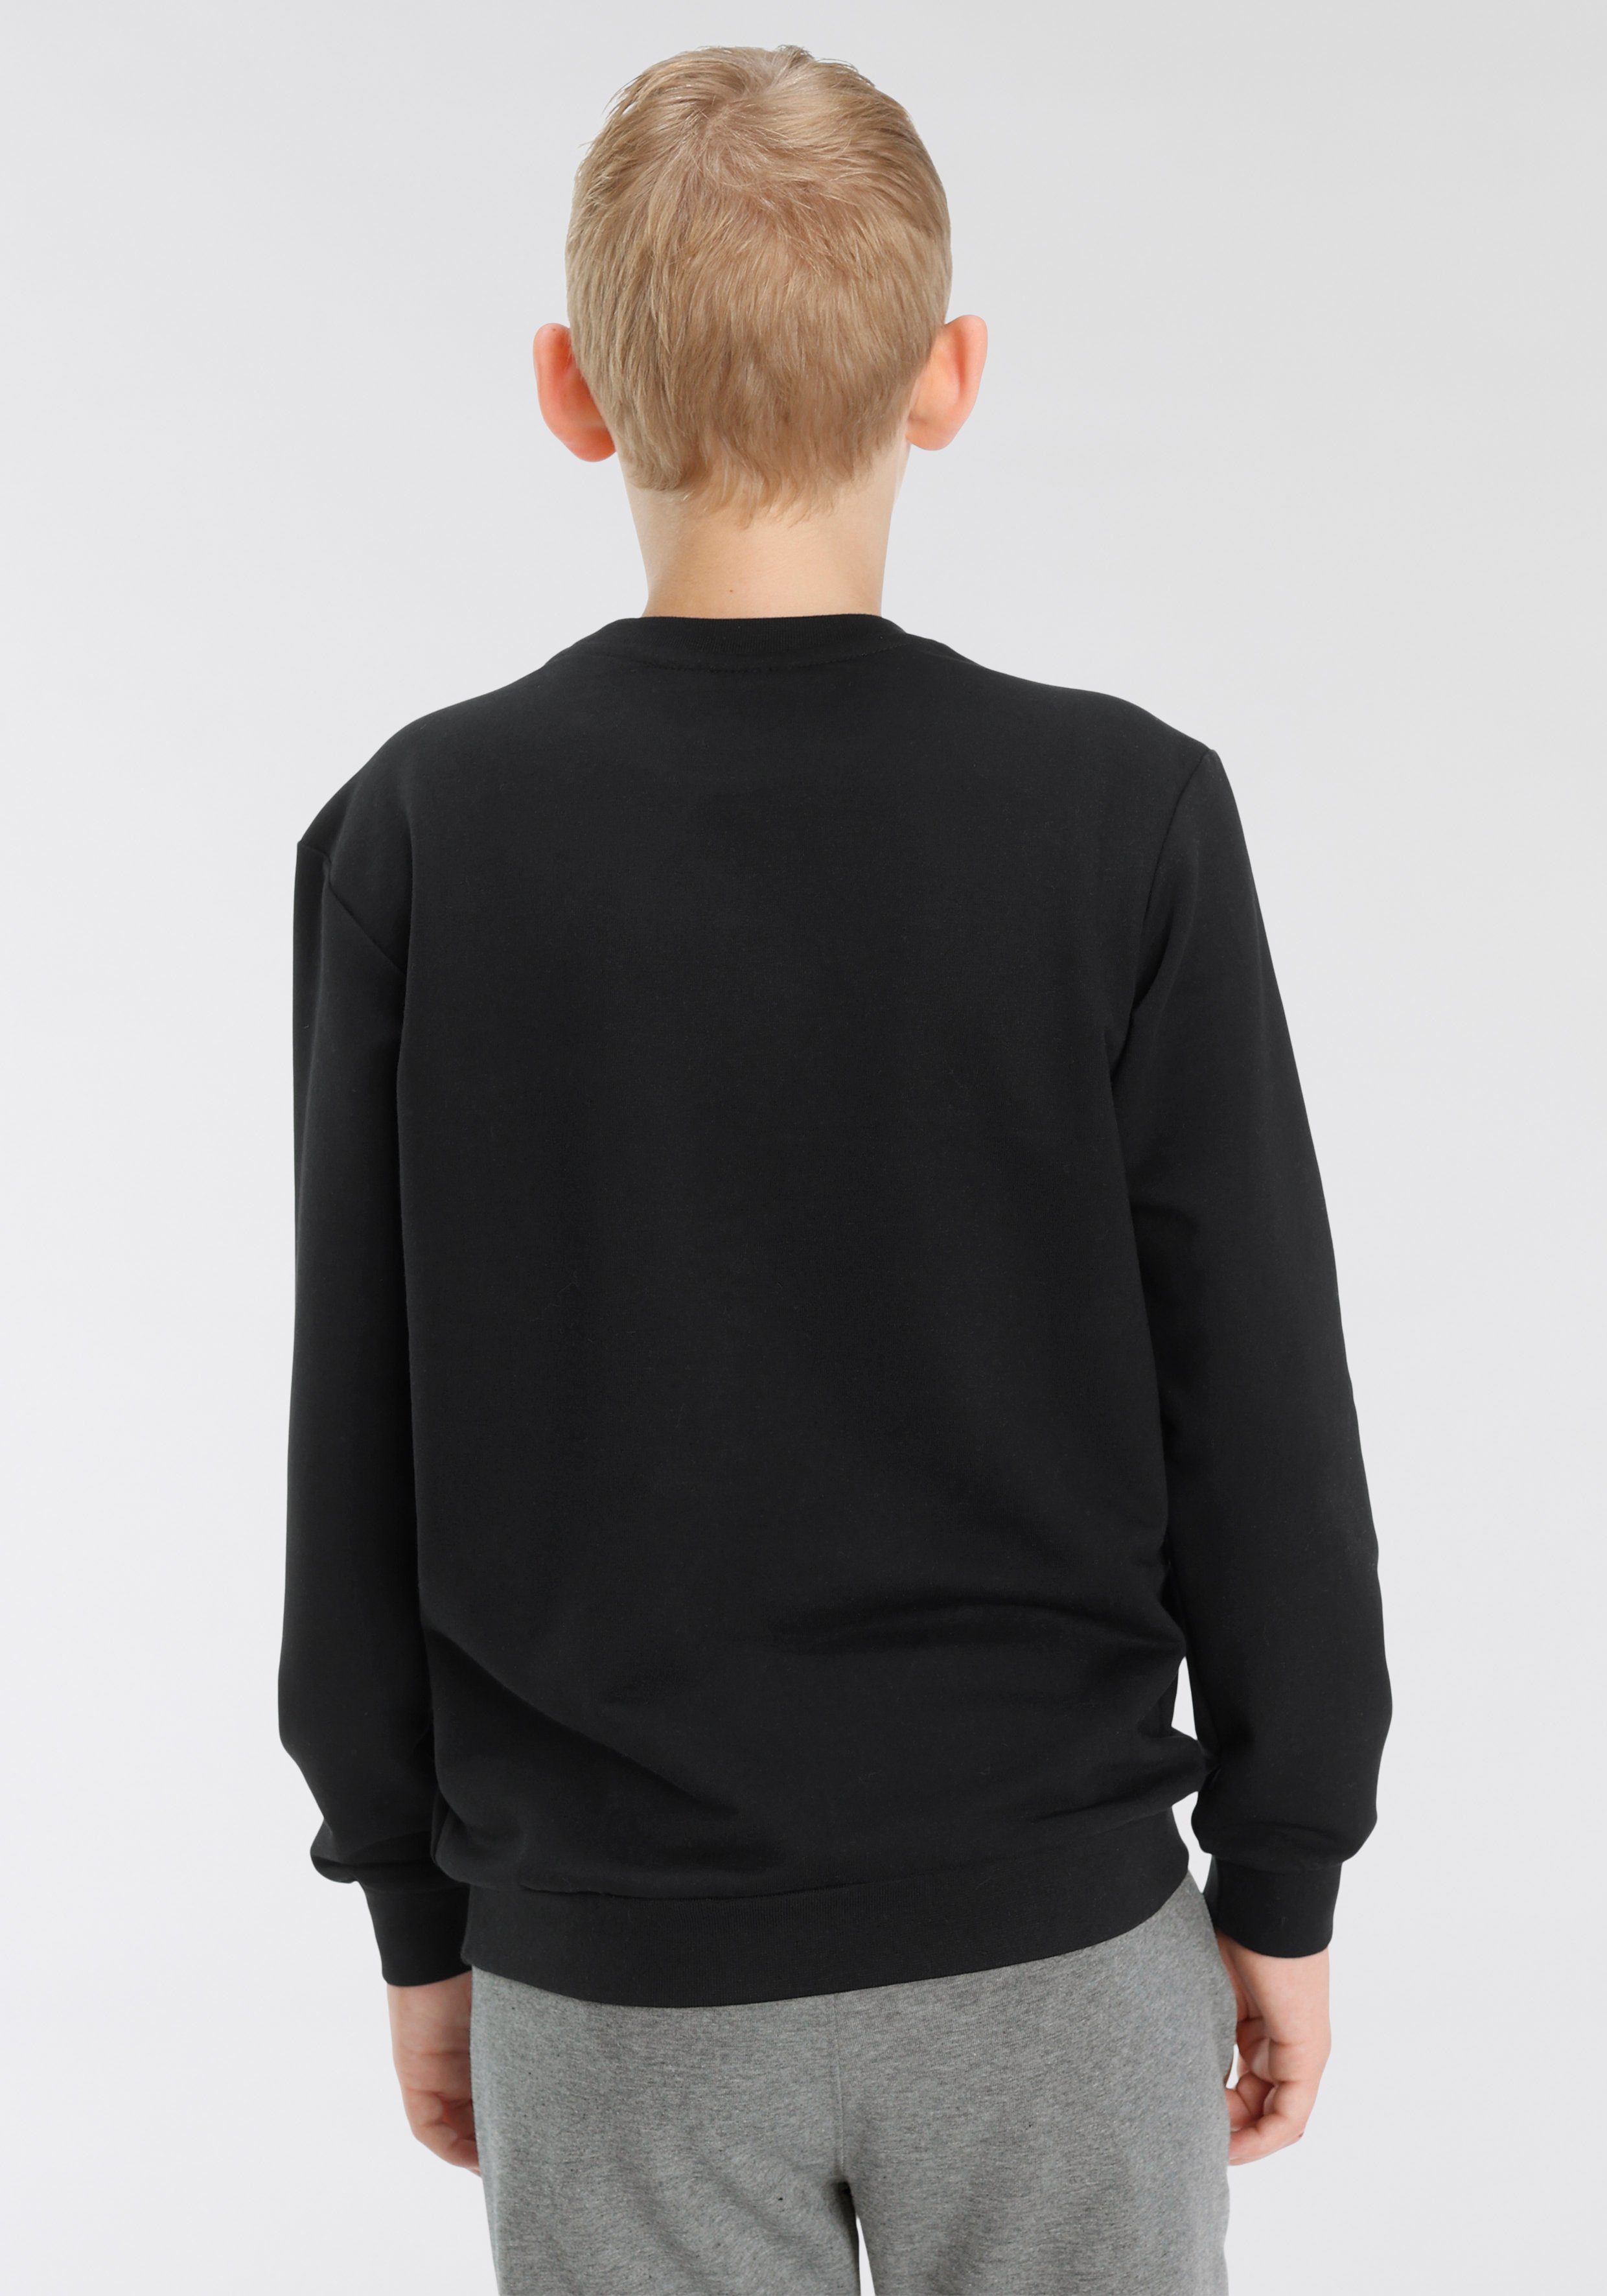 Sweatshirt für DOS - Kinder SWEATSHIRT schwarz hummel